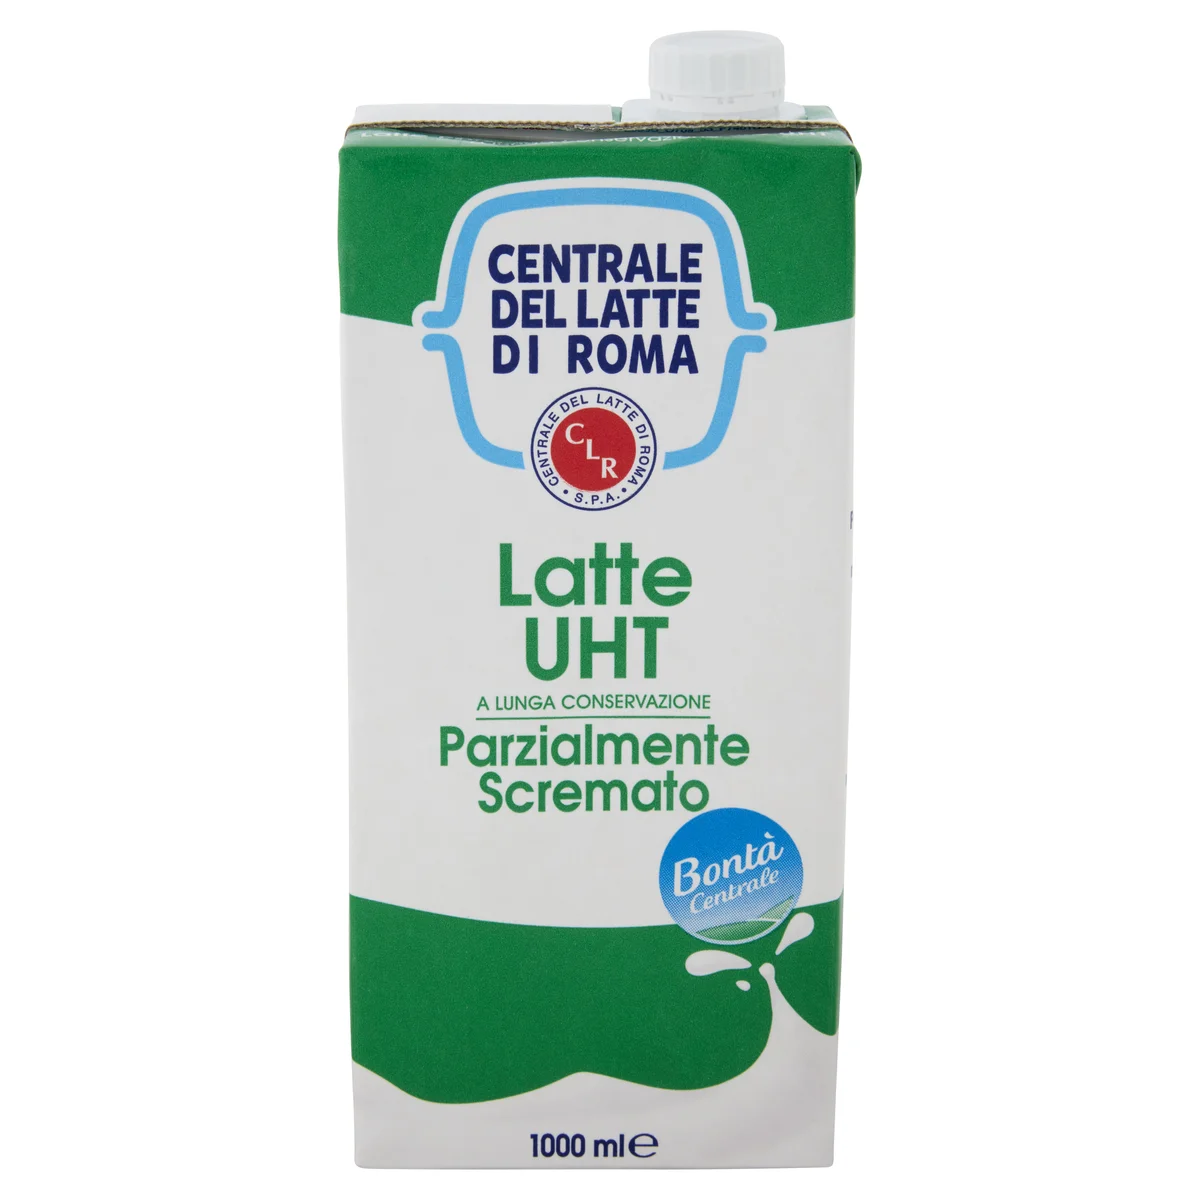 Centrale del latte di Roma Latte UHT Parzialmente Scremato a lunga  conservazione 1000 ml